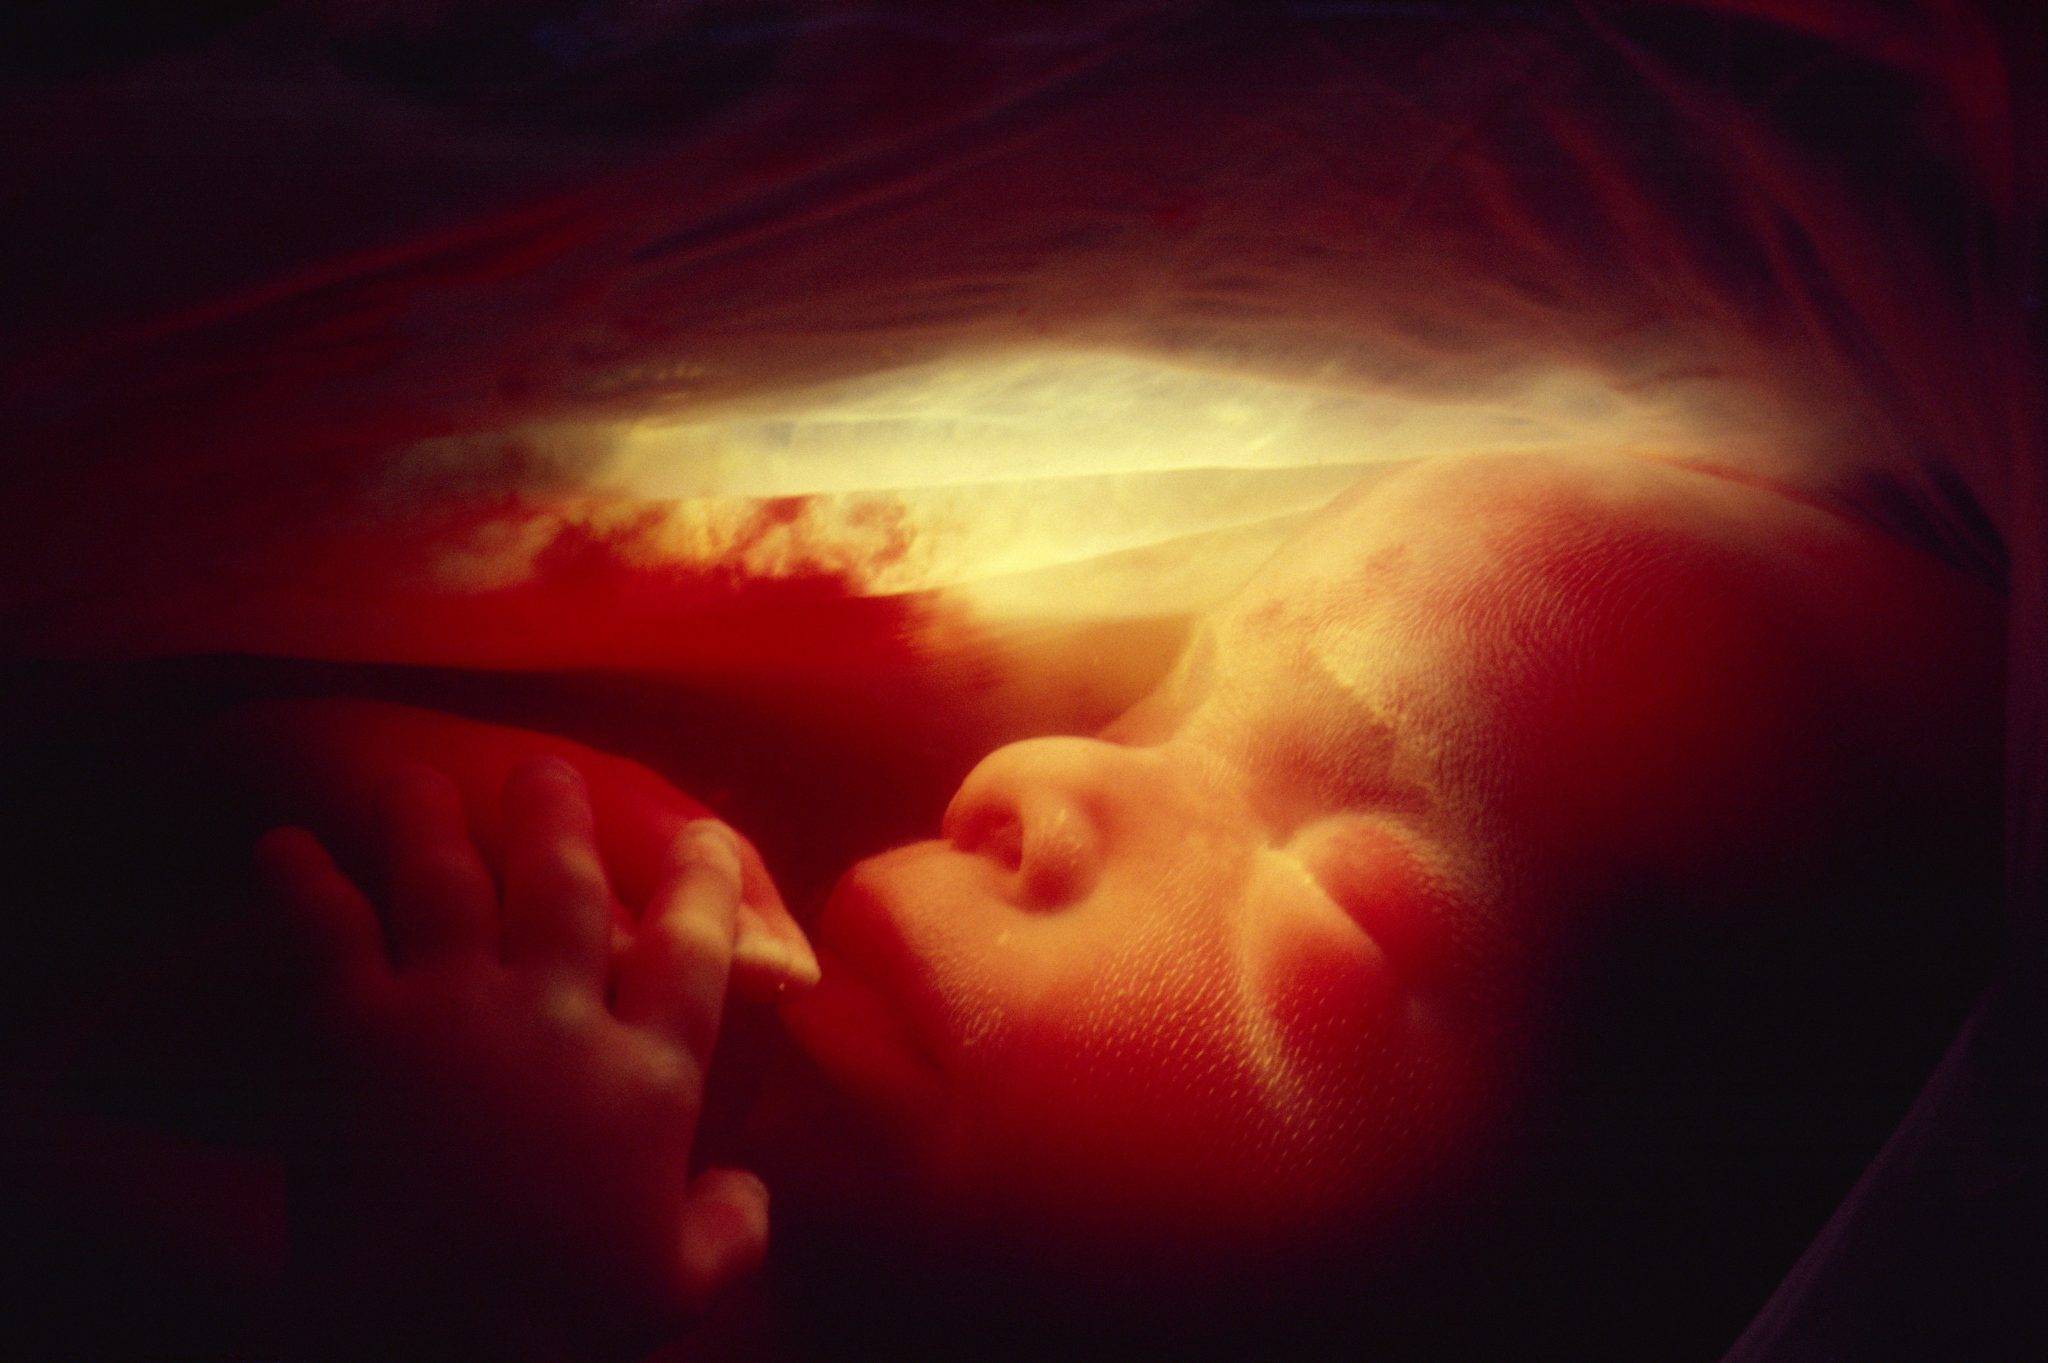 16 недель беременности – что происходит, развитие плода, ощущения, как выглядит живот - agulife.ru